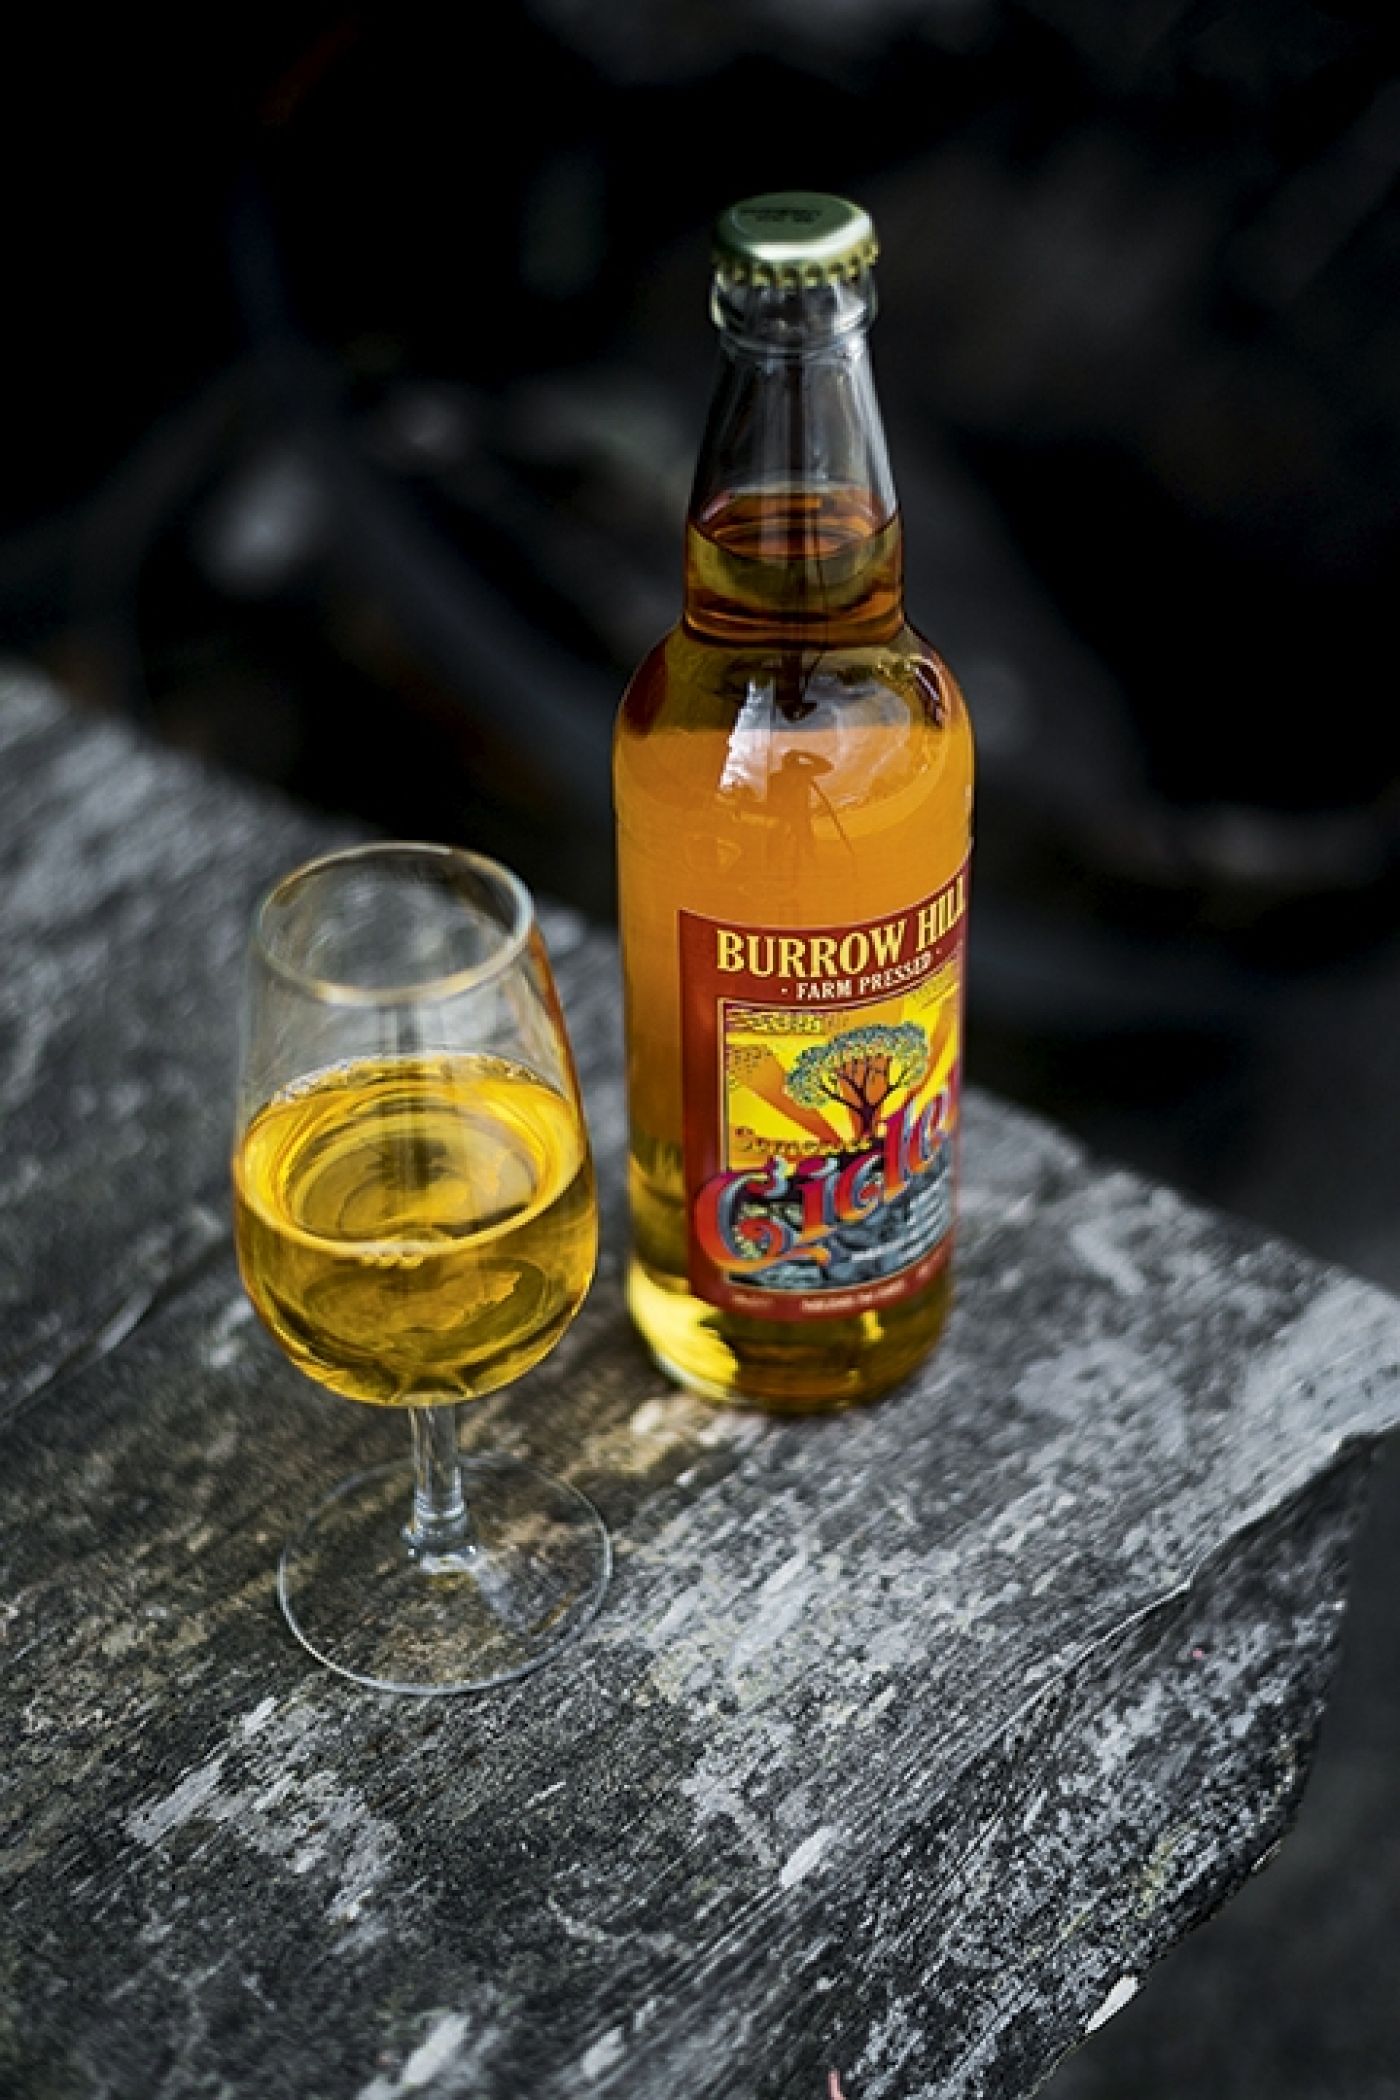 Somerset Cider Brandy Burrow Hill Cider Bottle 8566